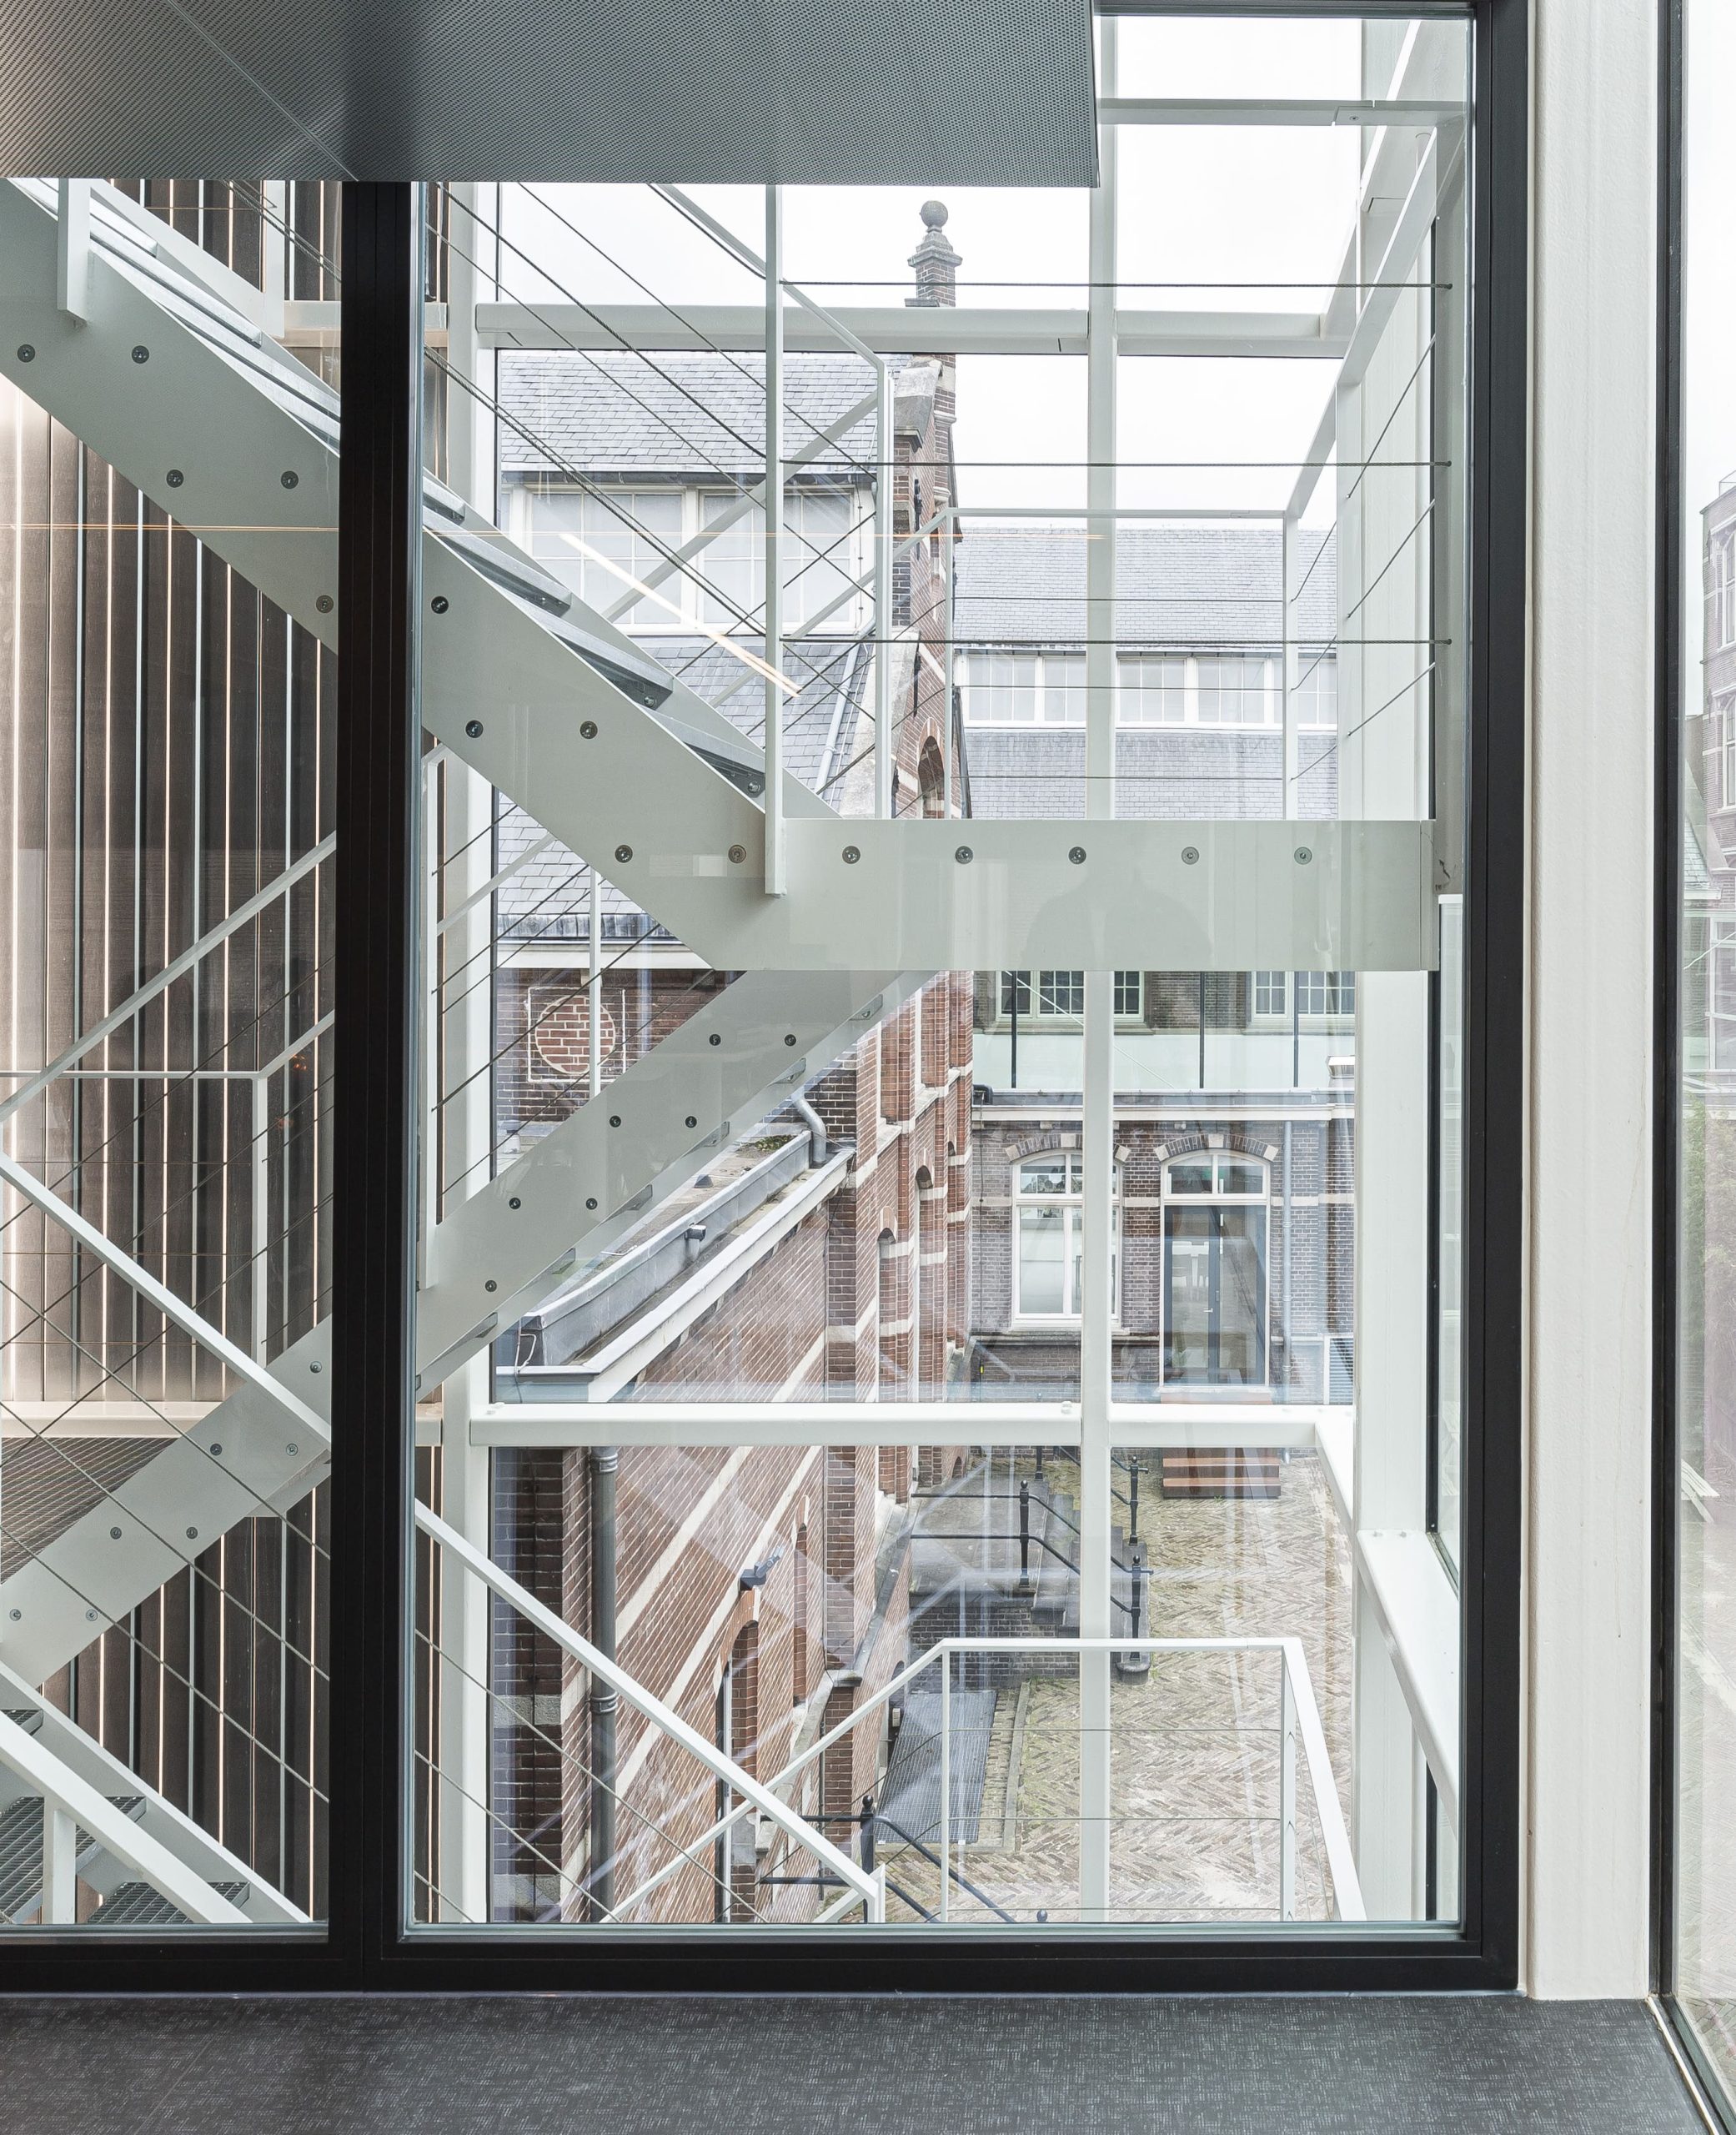 Blick aus dem Fenster auf eine weiße Außentreppe aus Metall, dahinter mehrere Backsteingebäude. Building D(emountable), Foto: Lucas van der Wee